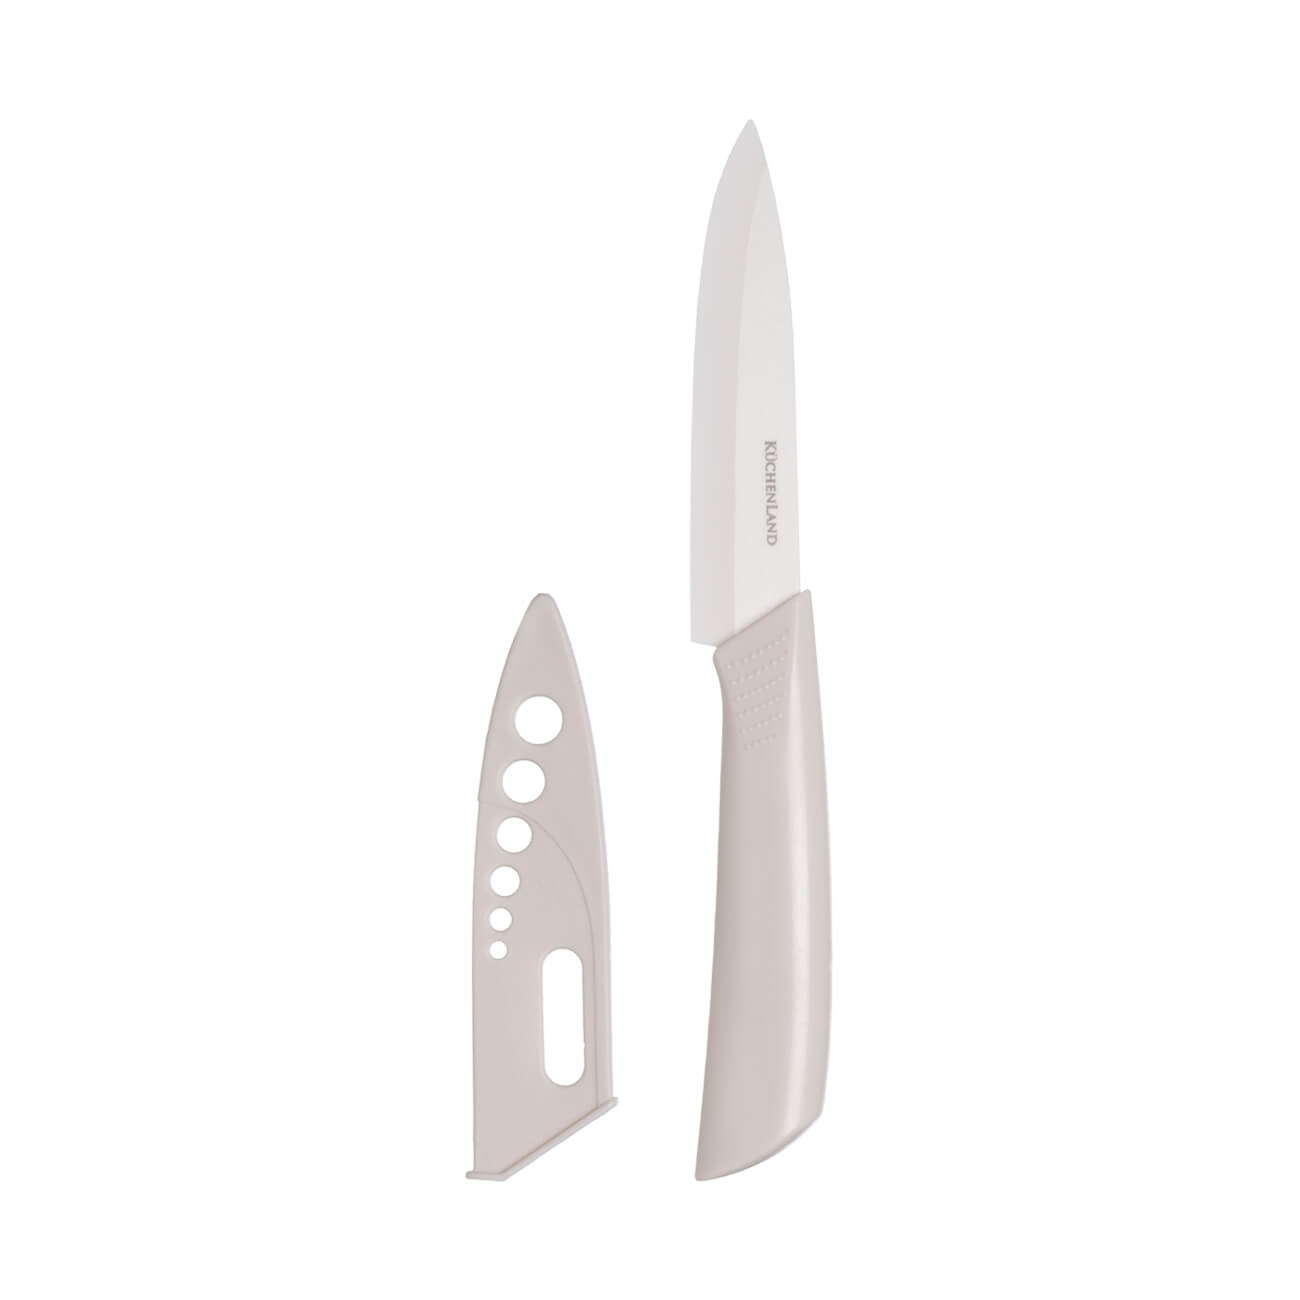 Нож для чистки овощей, 10 см, с чехлом, керамика/пластик, молочный, Regular изображение № 1